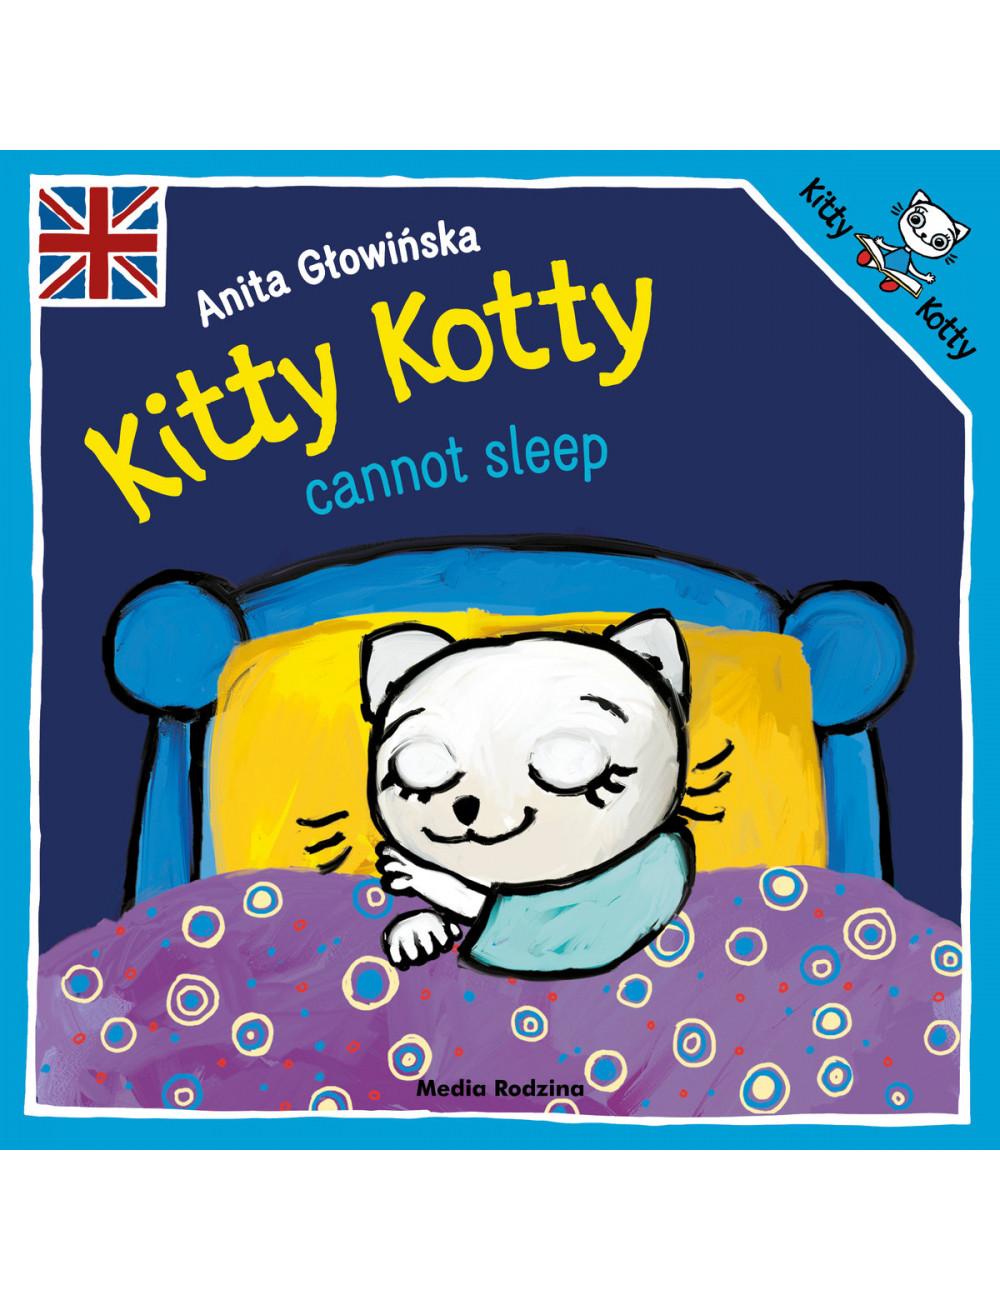 Kitty Kotty cannot sleep,...